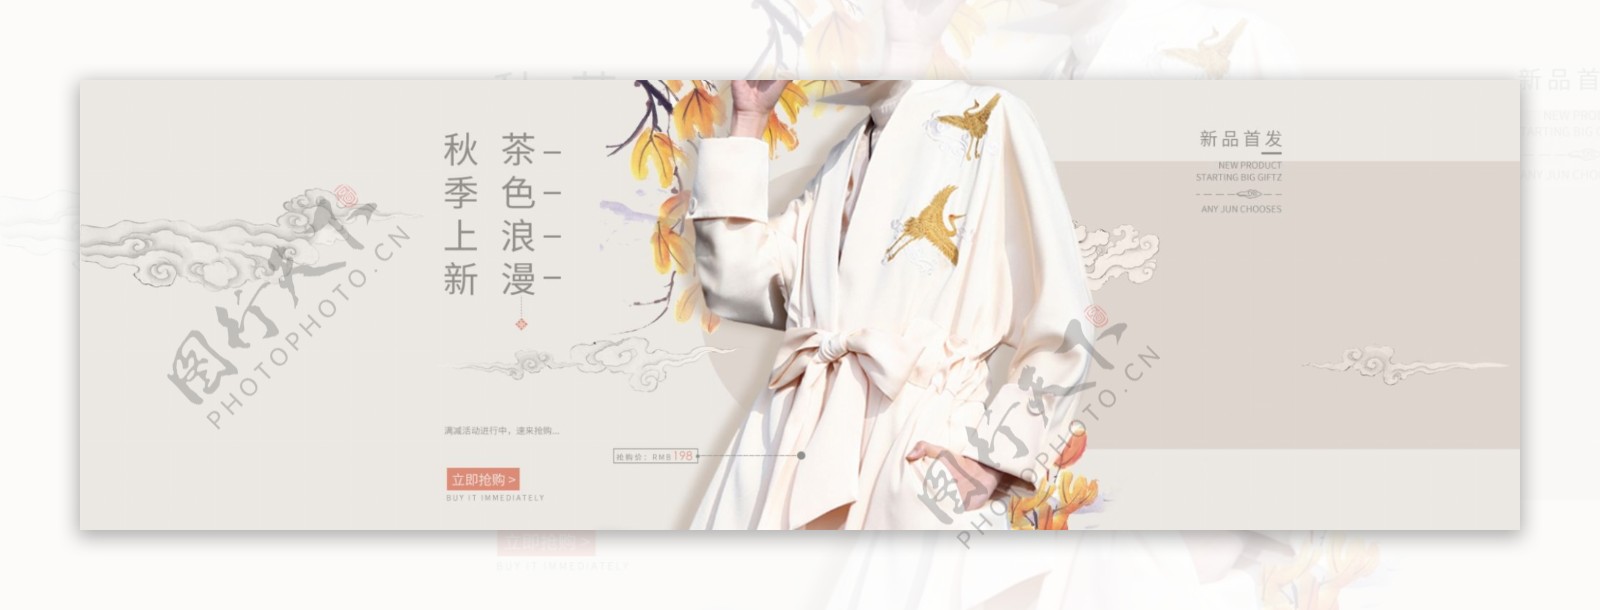 复古中国风女装秋季上新复古外套海报